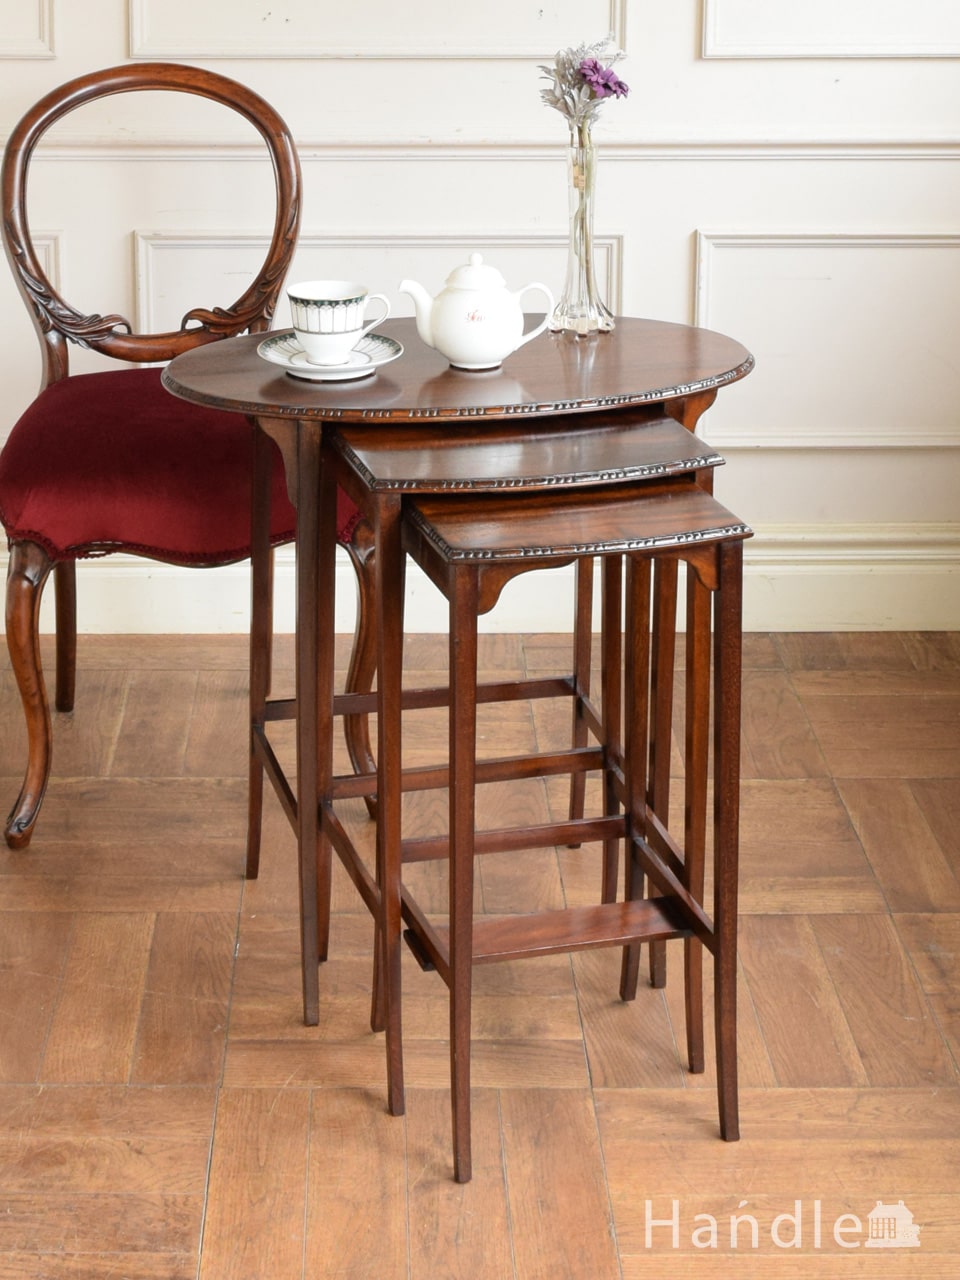 アンティークのおしゃれなテーブル、イギリスで見つけた杢目が美しいマホガニー材のネストテーブル (q-2942-f)